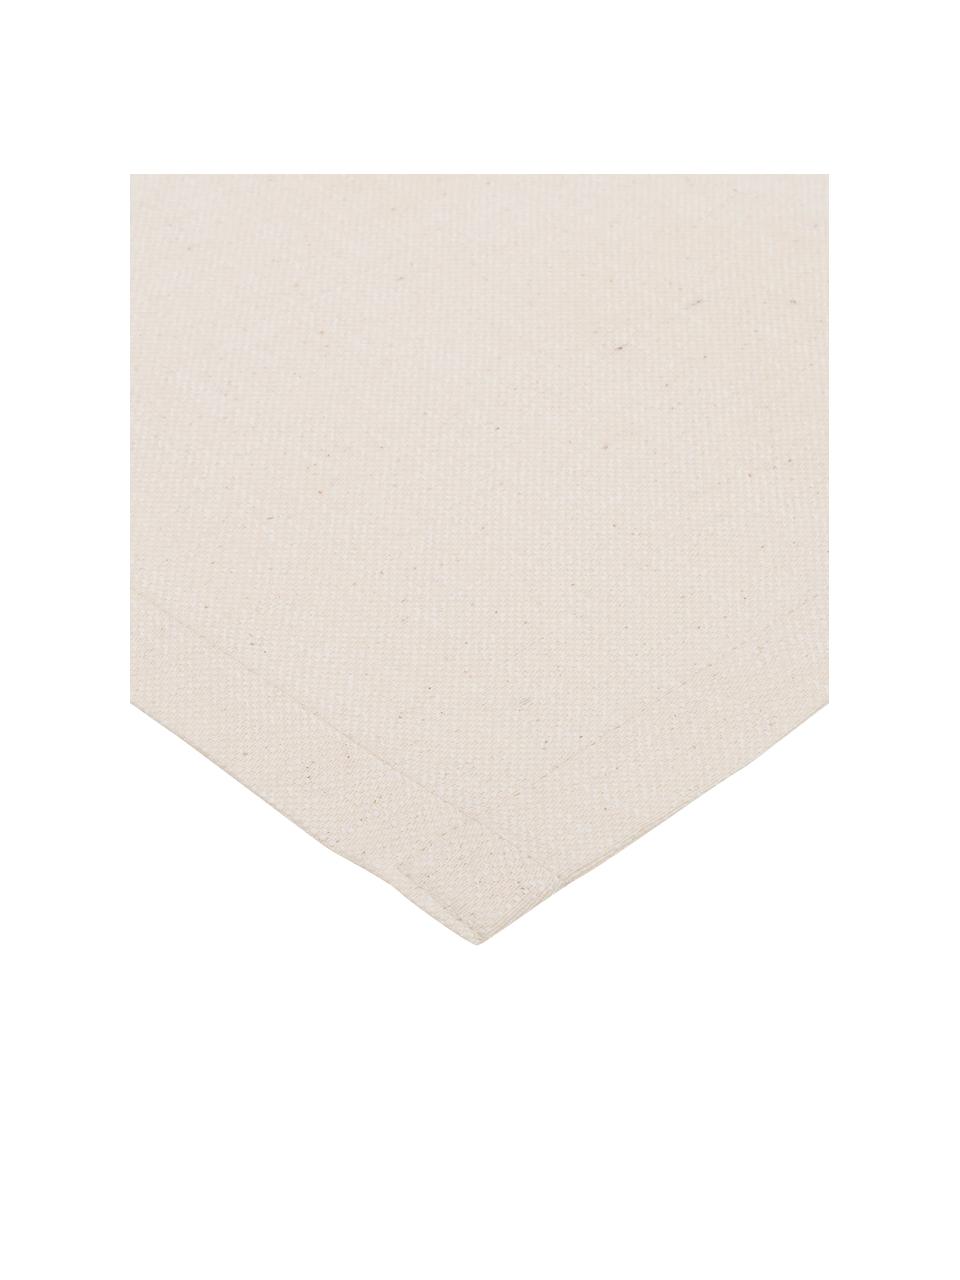 Tischläufer Riva aus Baumwollgemisch in Beige, 55% Baumwolle, 45% Polyester, Beige, 40 x 150 cm